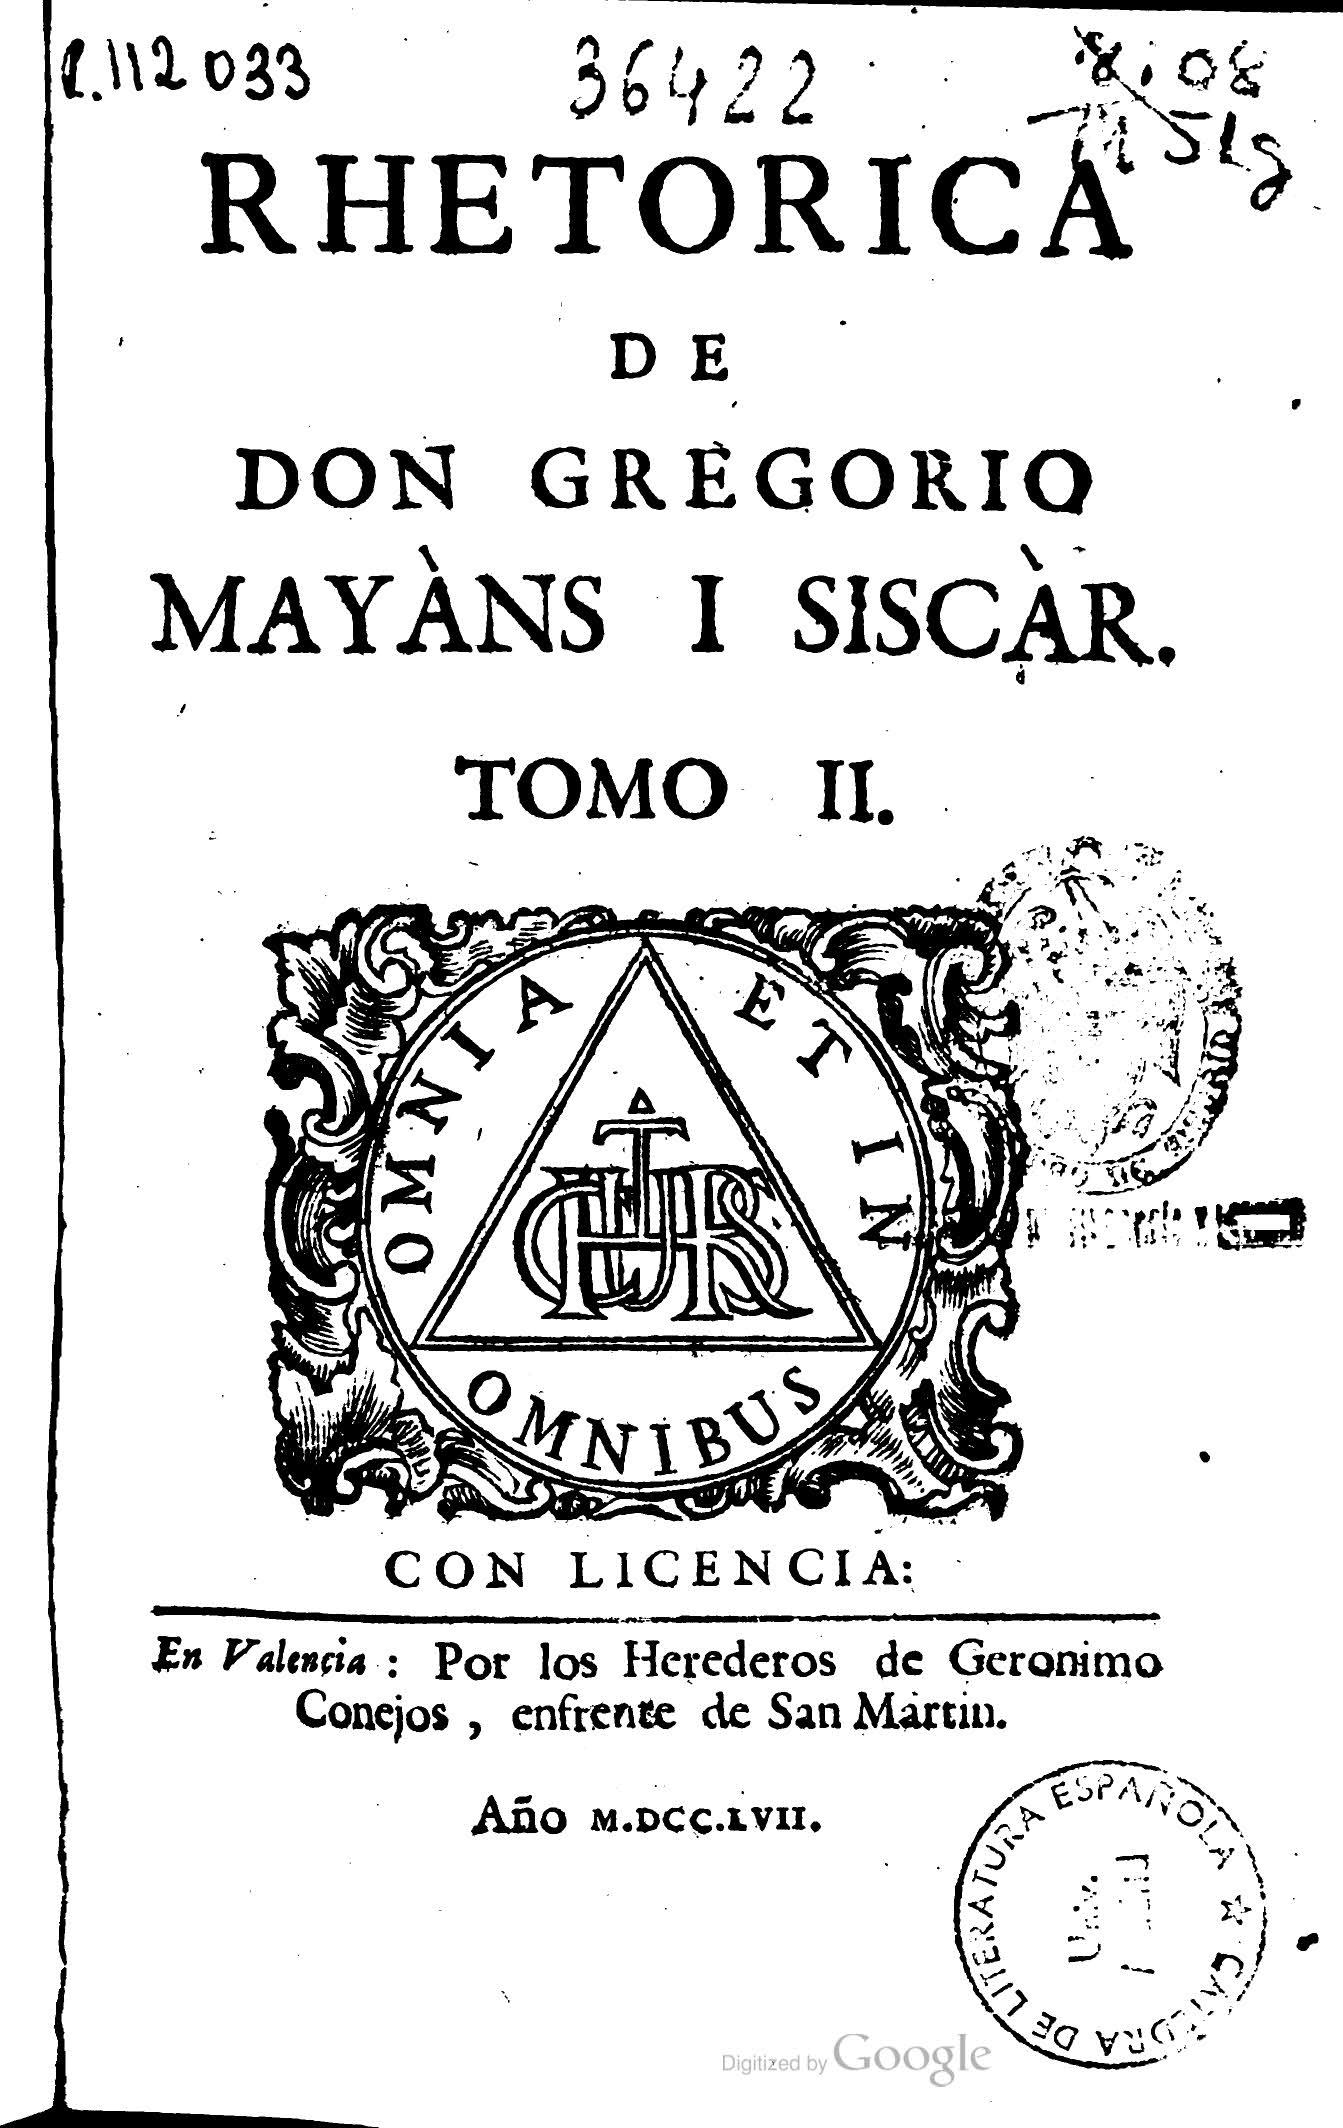 Rethorica de Don Gregorio Mayans i Siscar, Tomo II